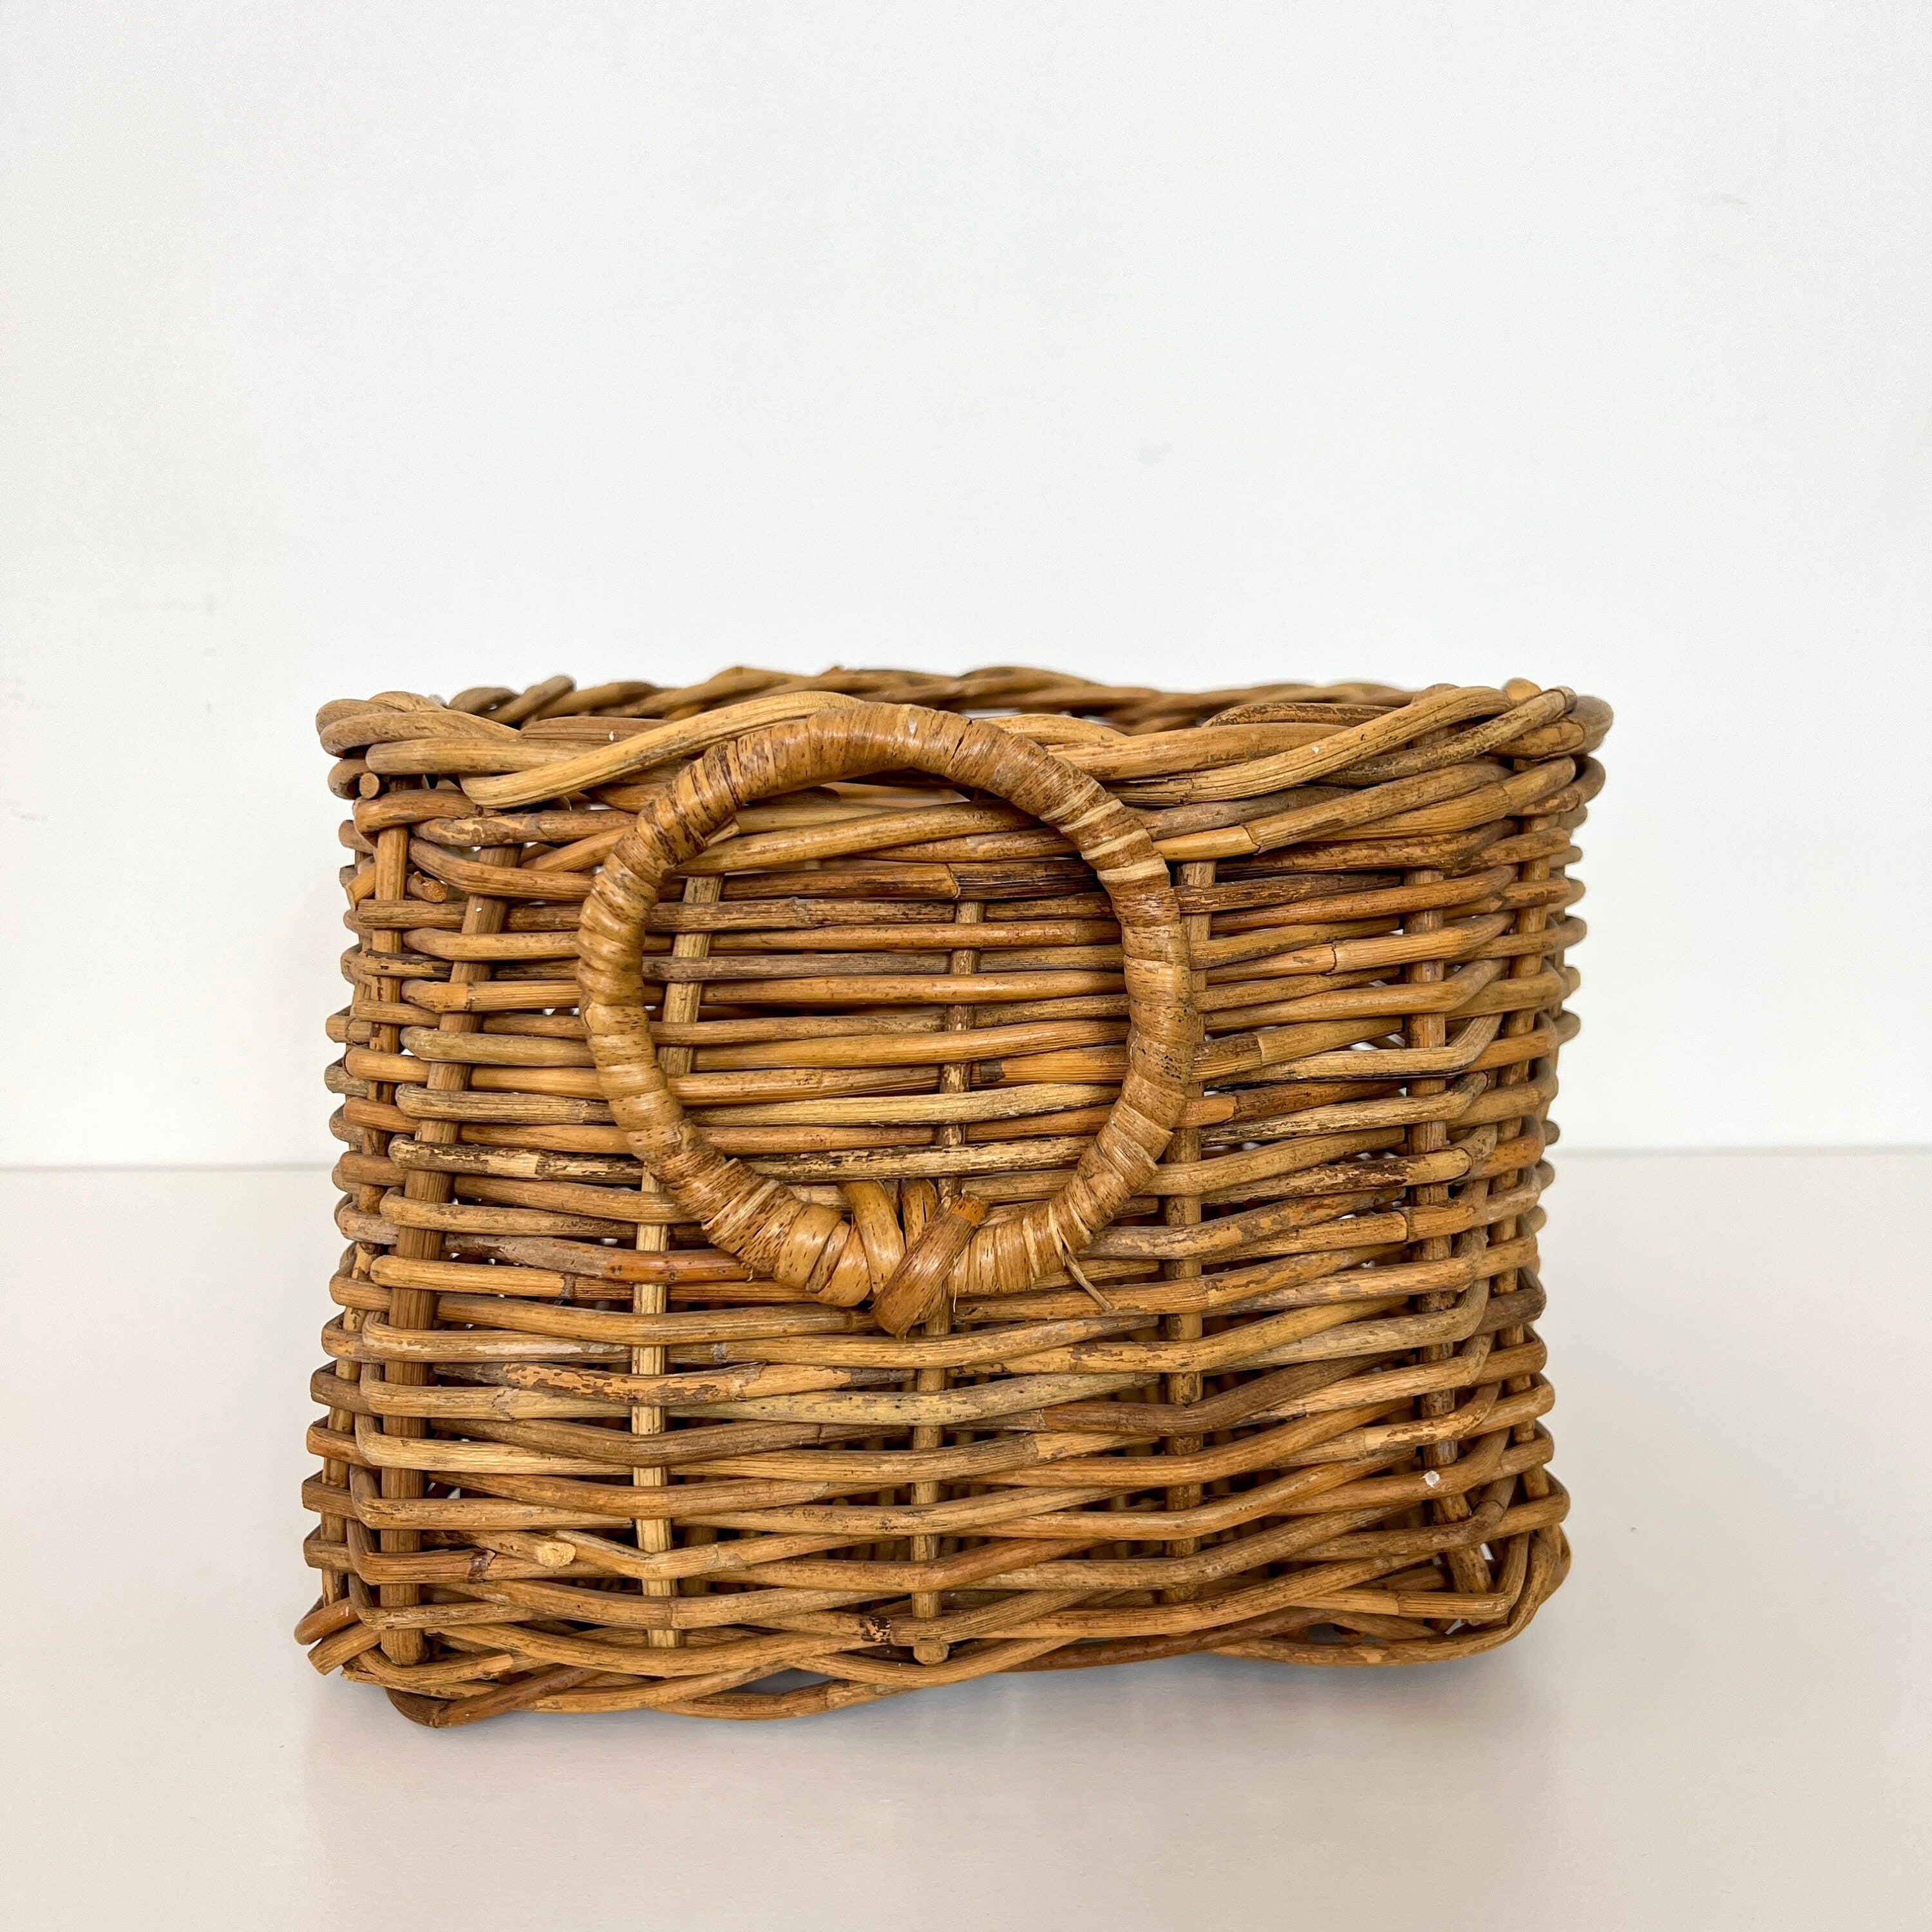 Vintage Wicker Storage Log Basket with Handles